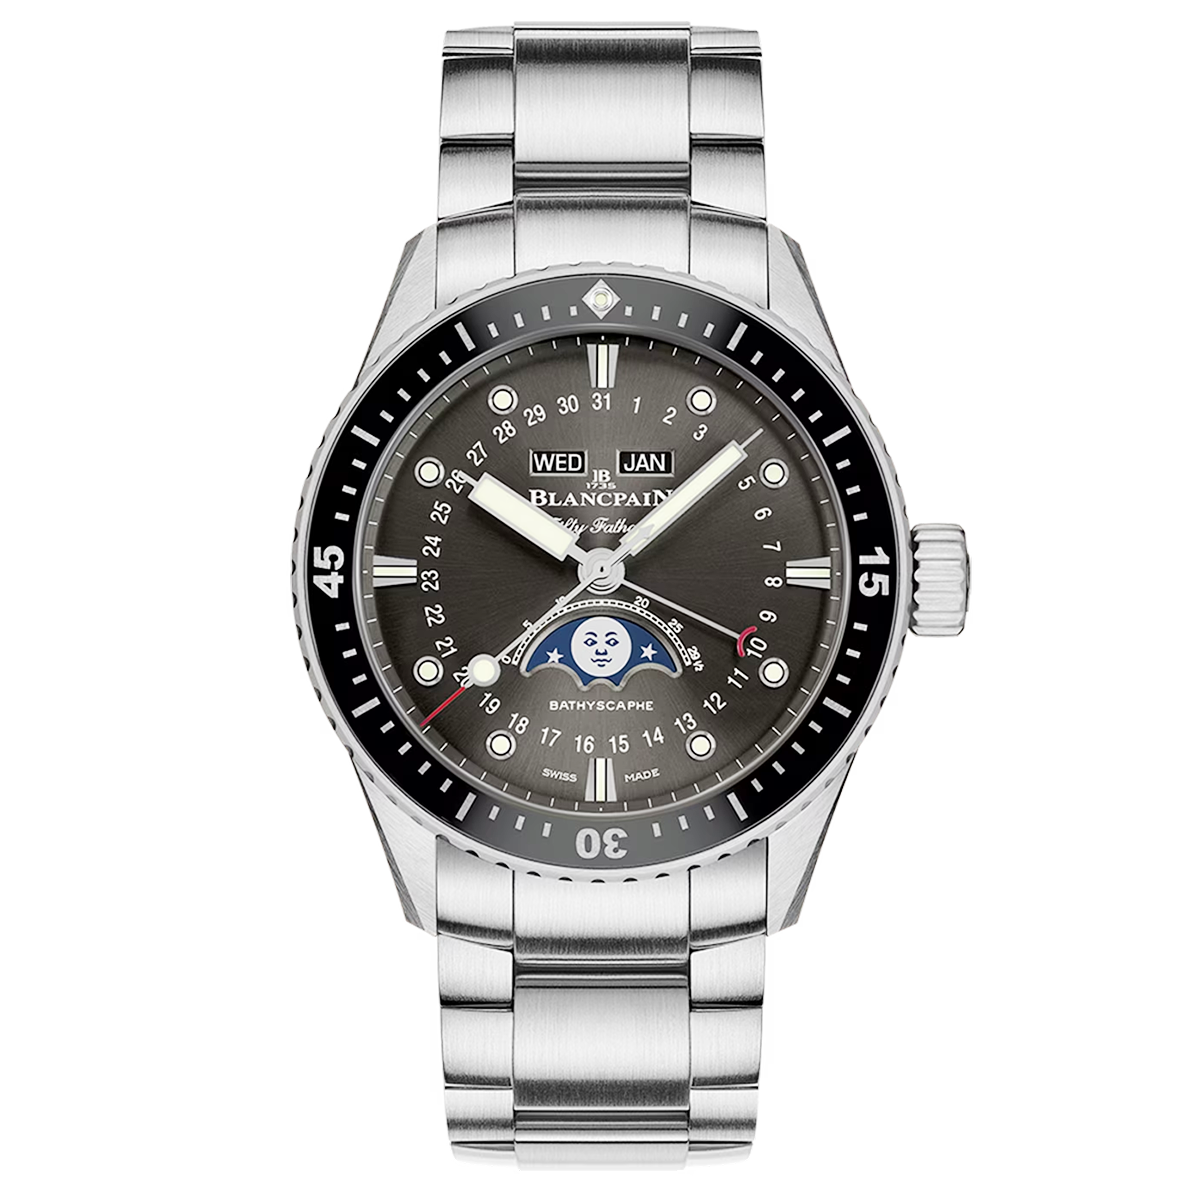 Fifty Fathoms Bathyscaphe Quantième Complet Phases de Lune Bracelet Watch